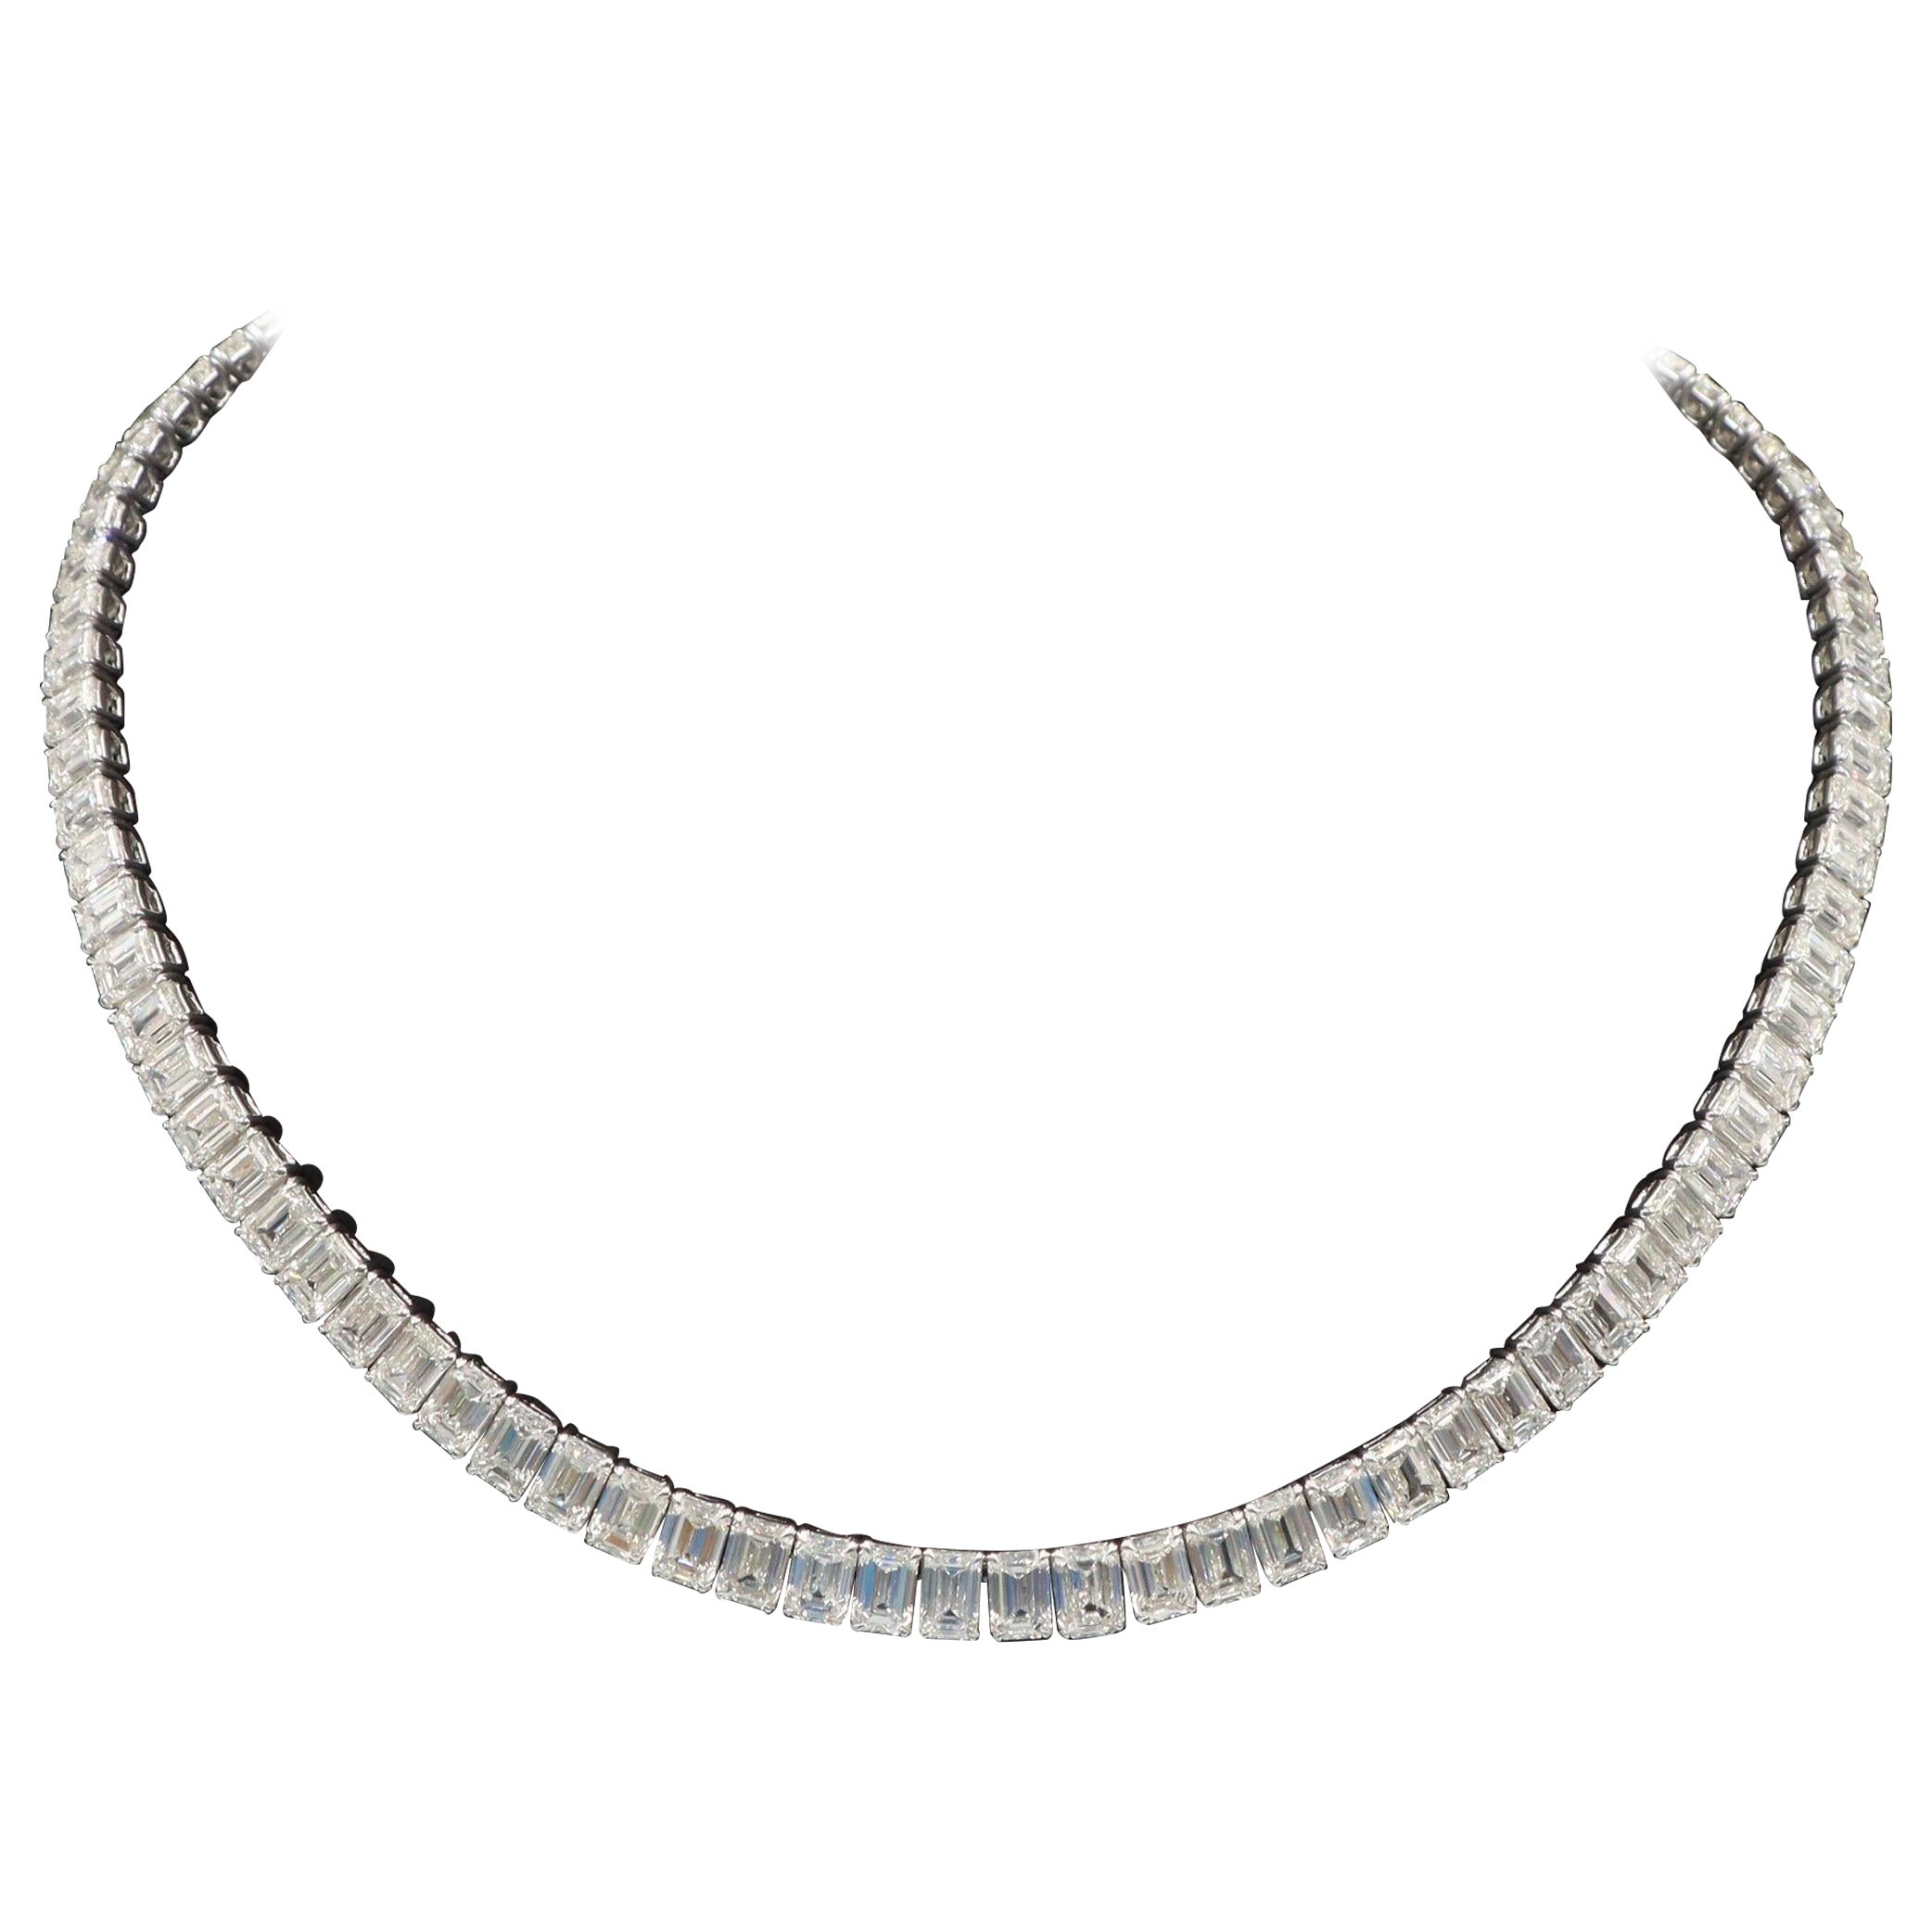 Emilio Jewelry GIA Certified 55.00 Carat Emerald Cut Diamond Necklace